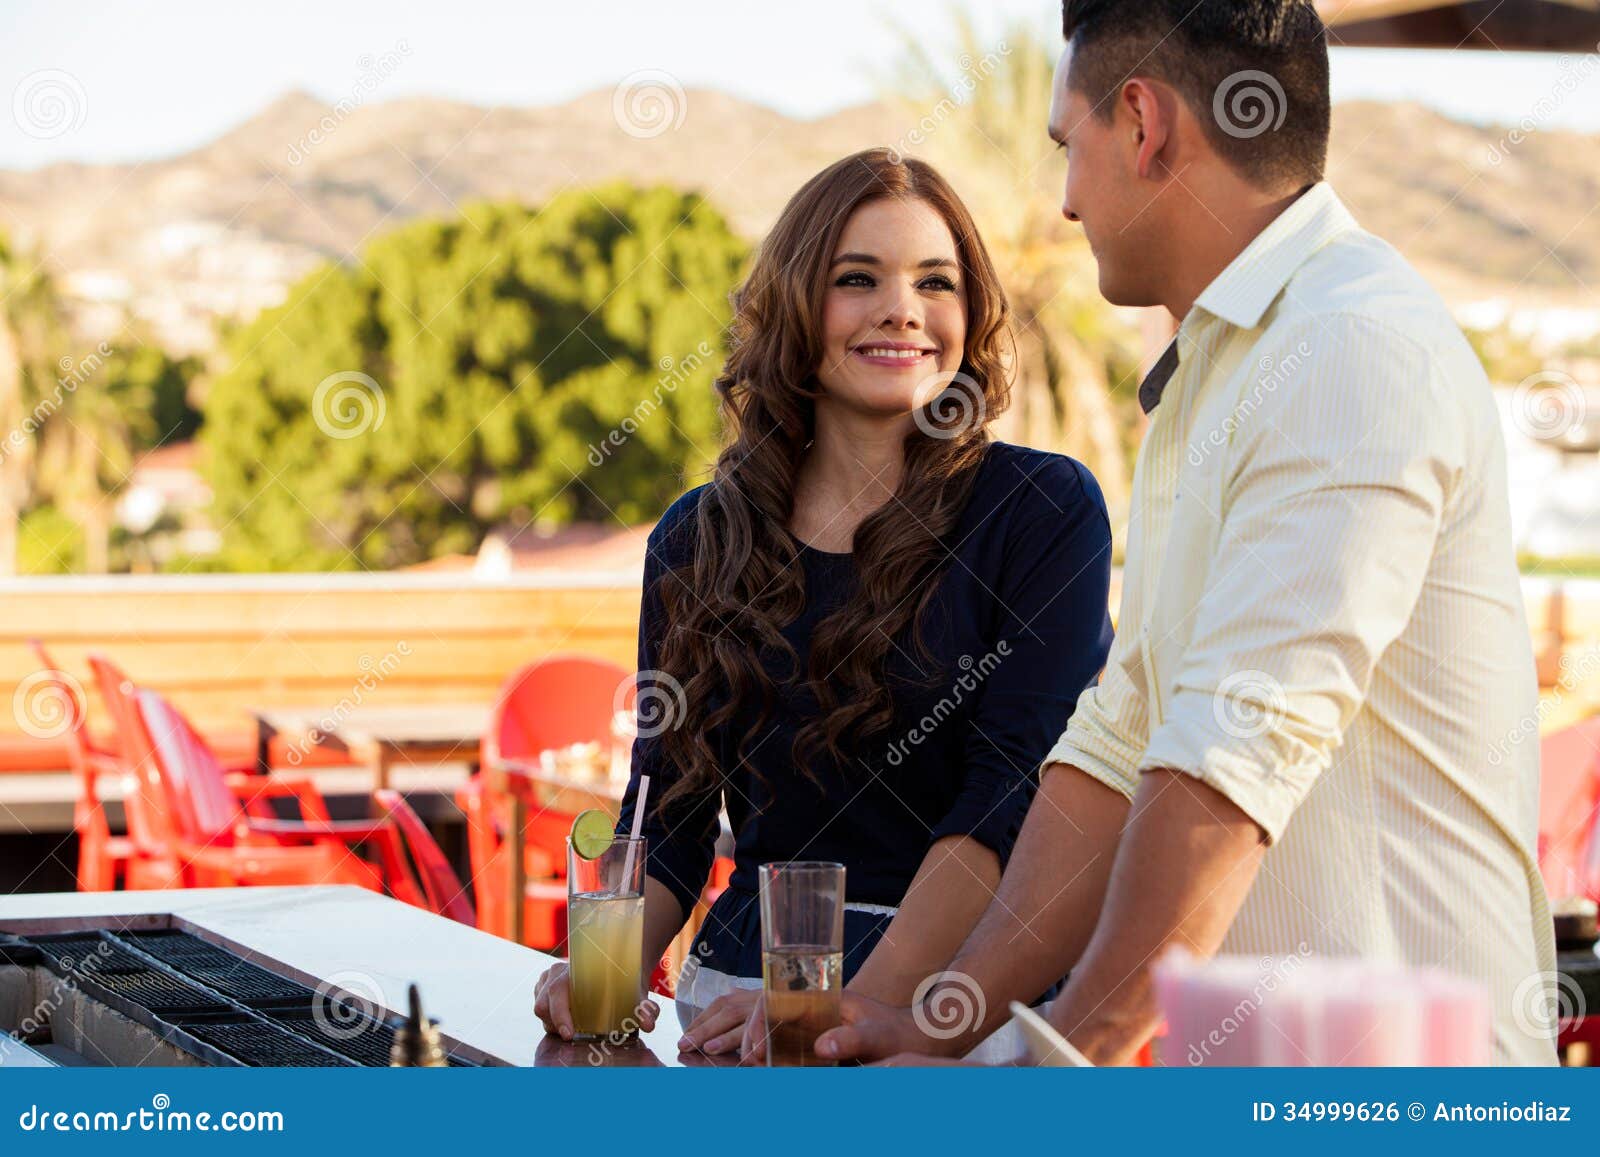 beautiful girl flirting at a bar